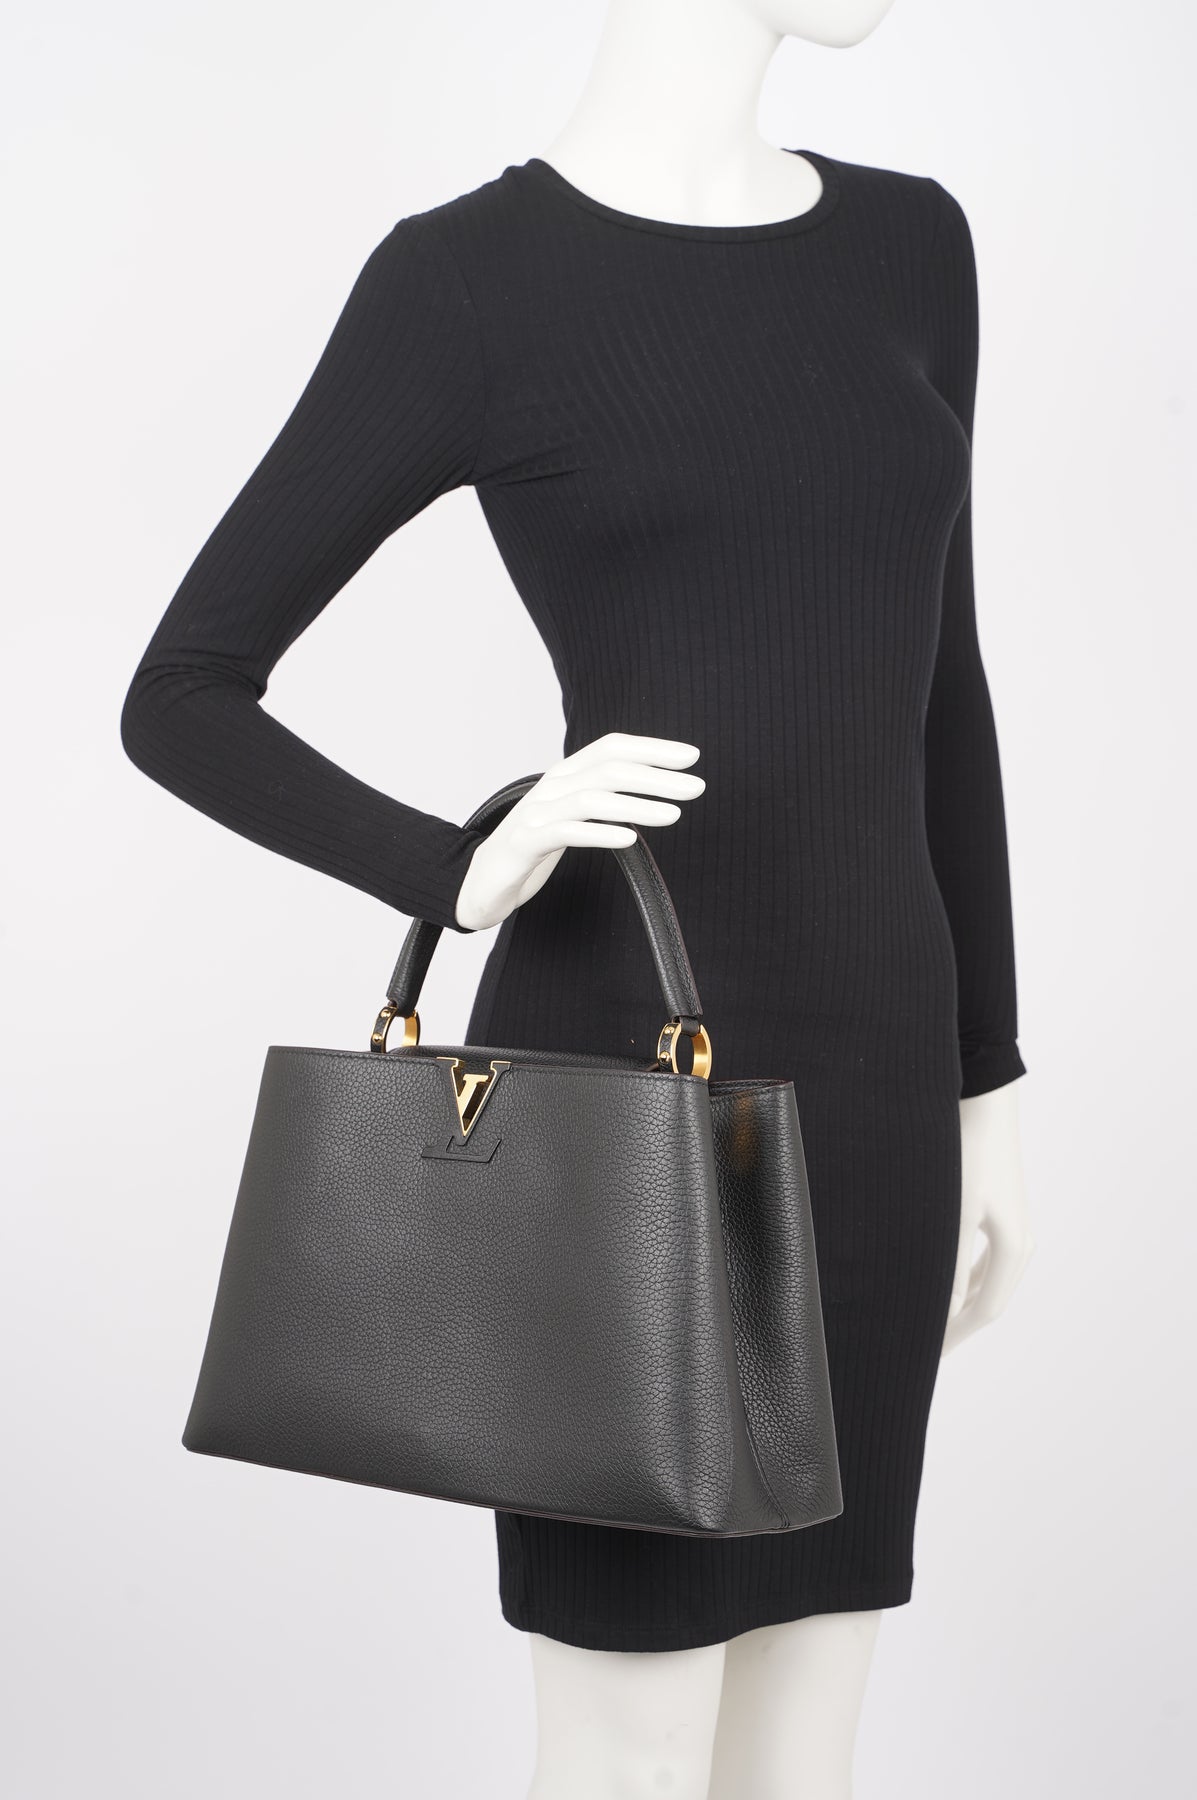 Louis Vuitton, Bags, Louis Vuitton Black Capucines Mm